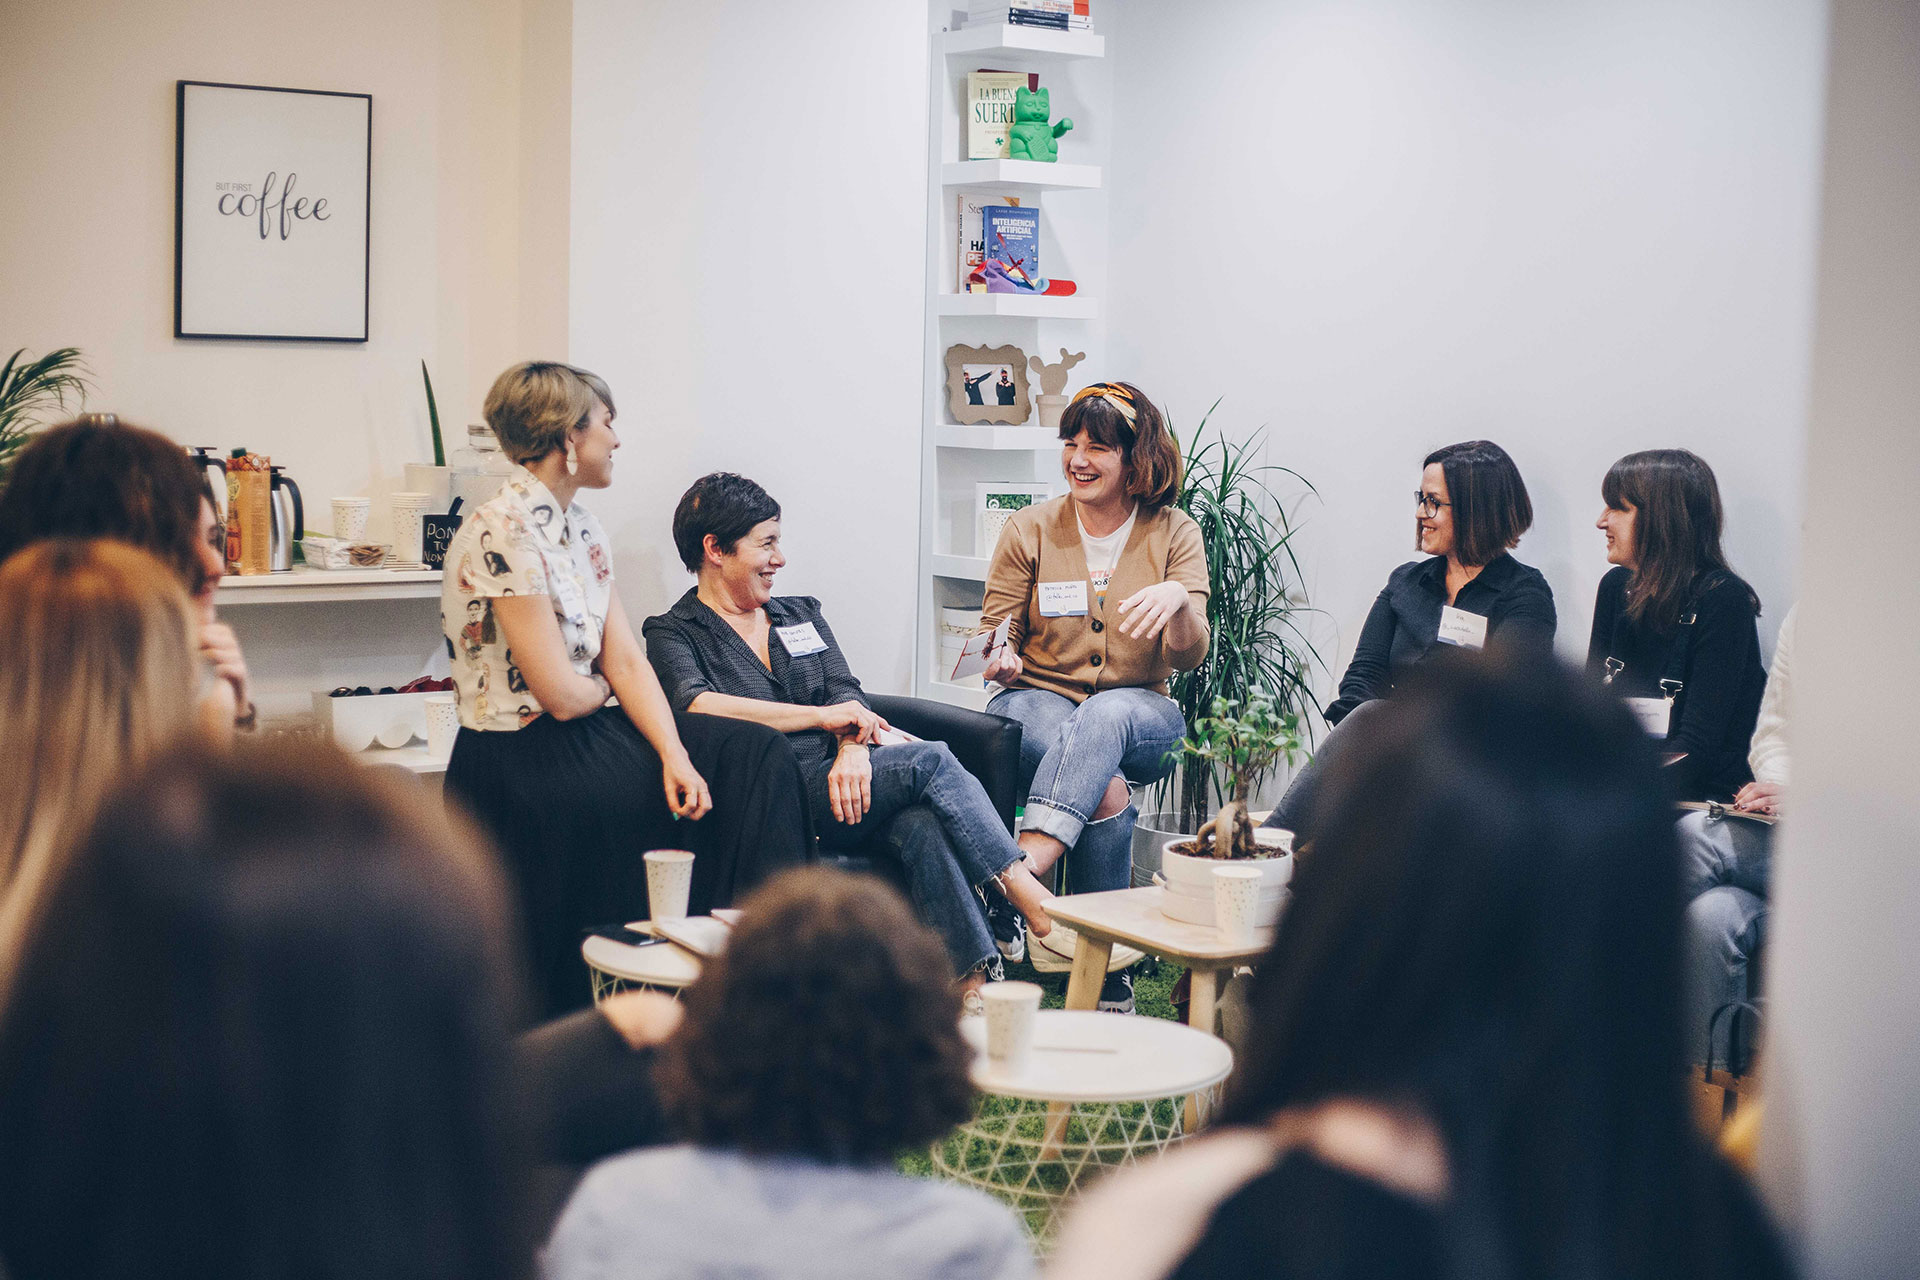 Emprendedoras en el evento "Café a bordo" organizado por Mulleres Atlánticas